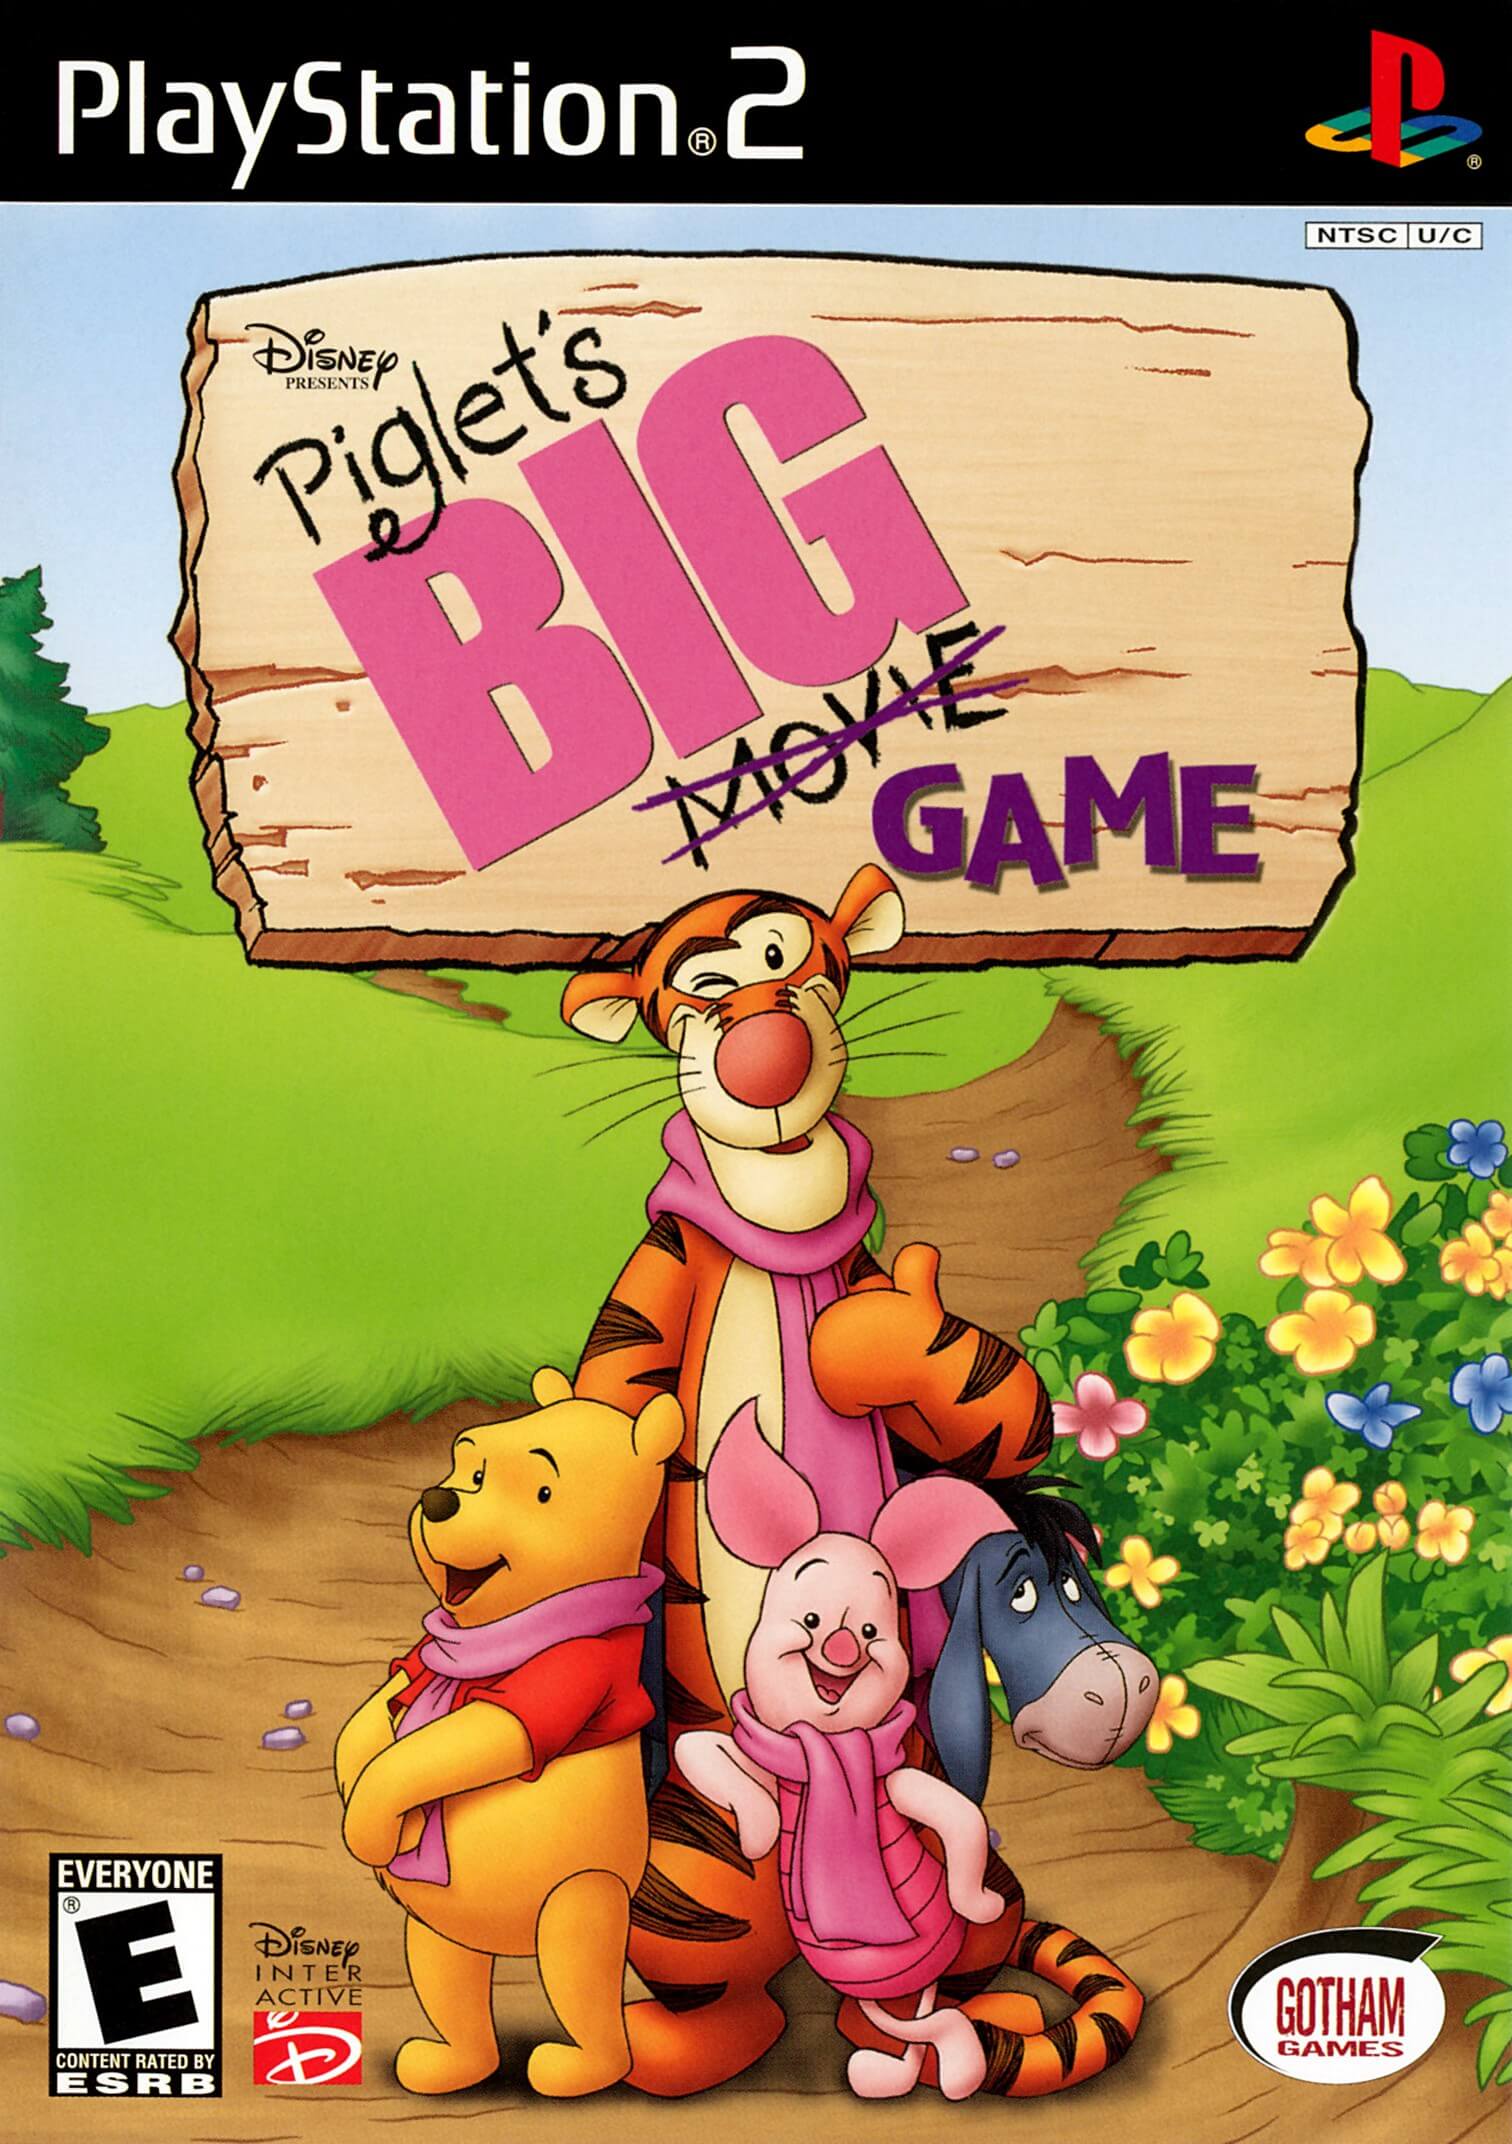 Piglet’s BIG Game